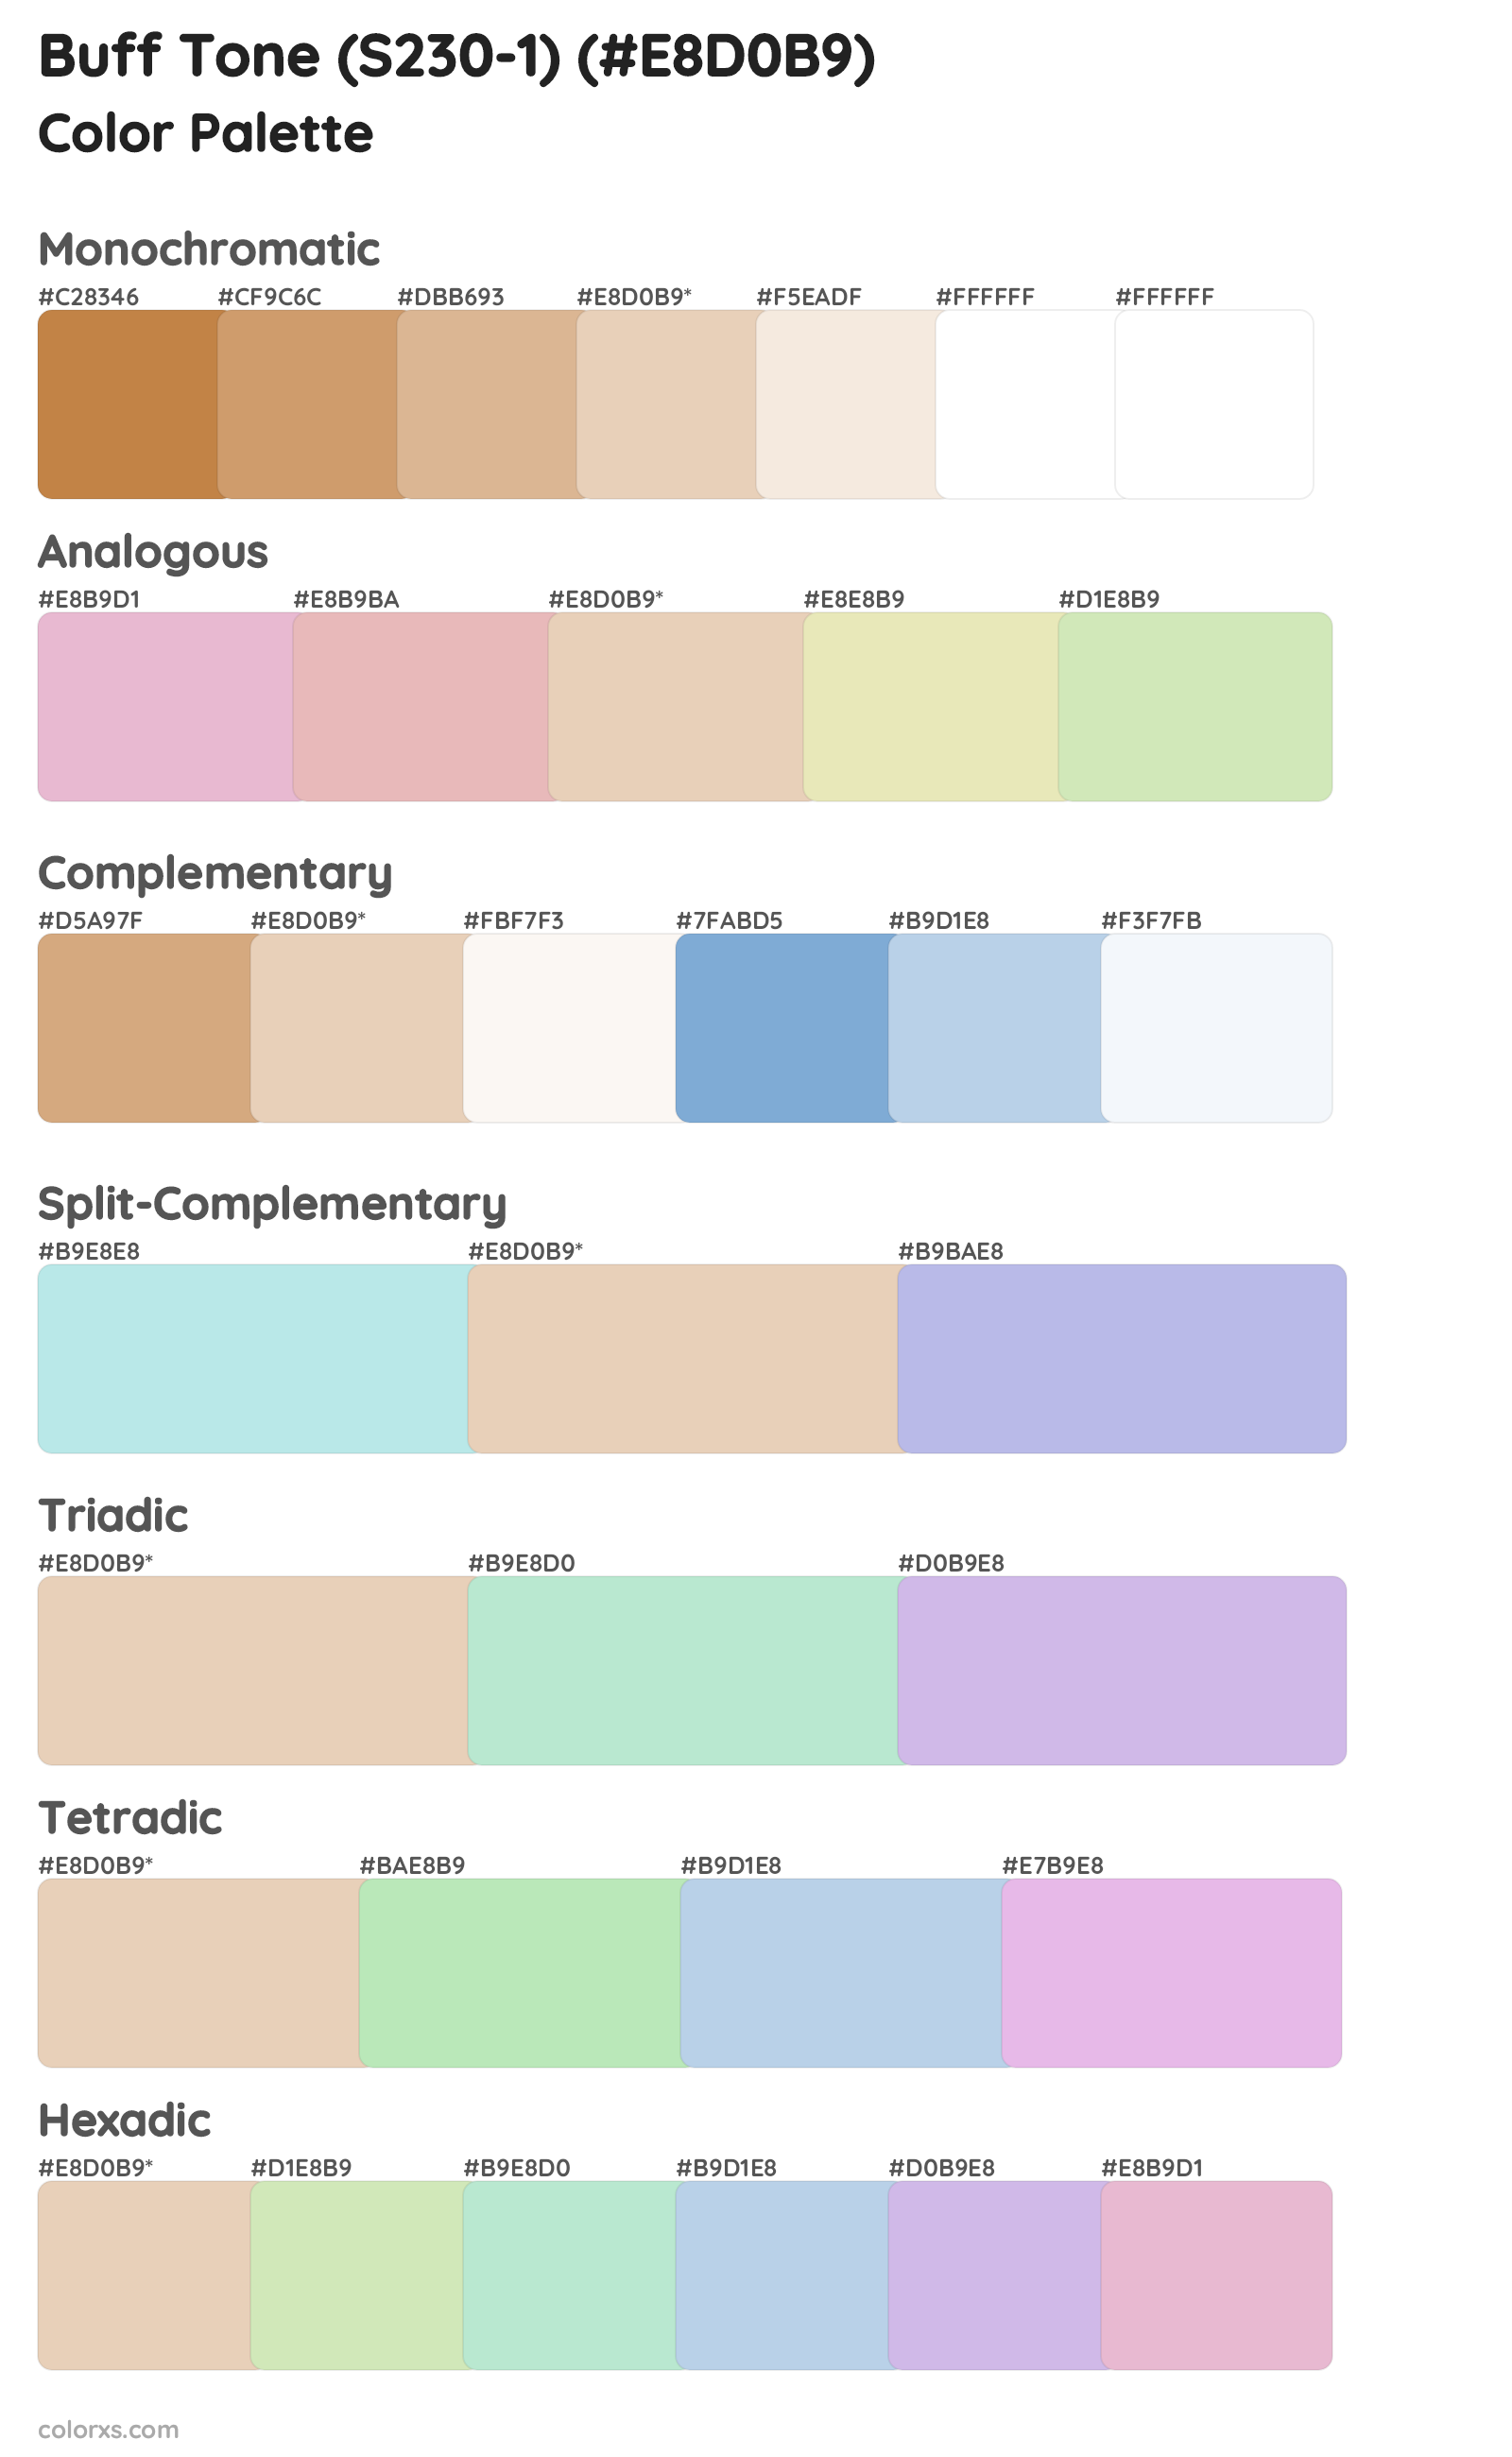 Buff Tone (S230-1) Color Scheme Palettes